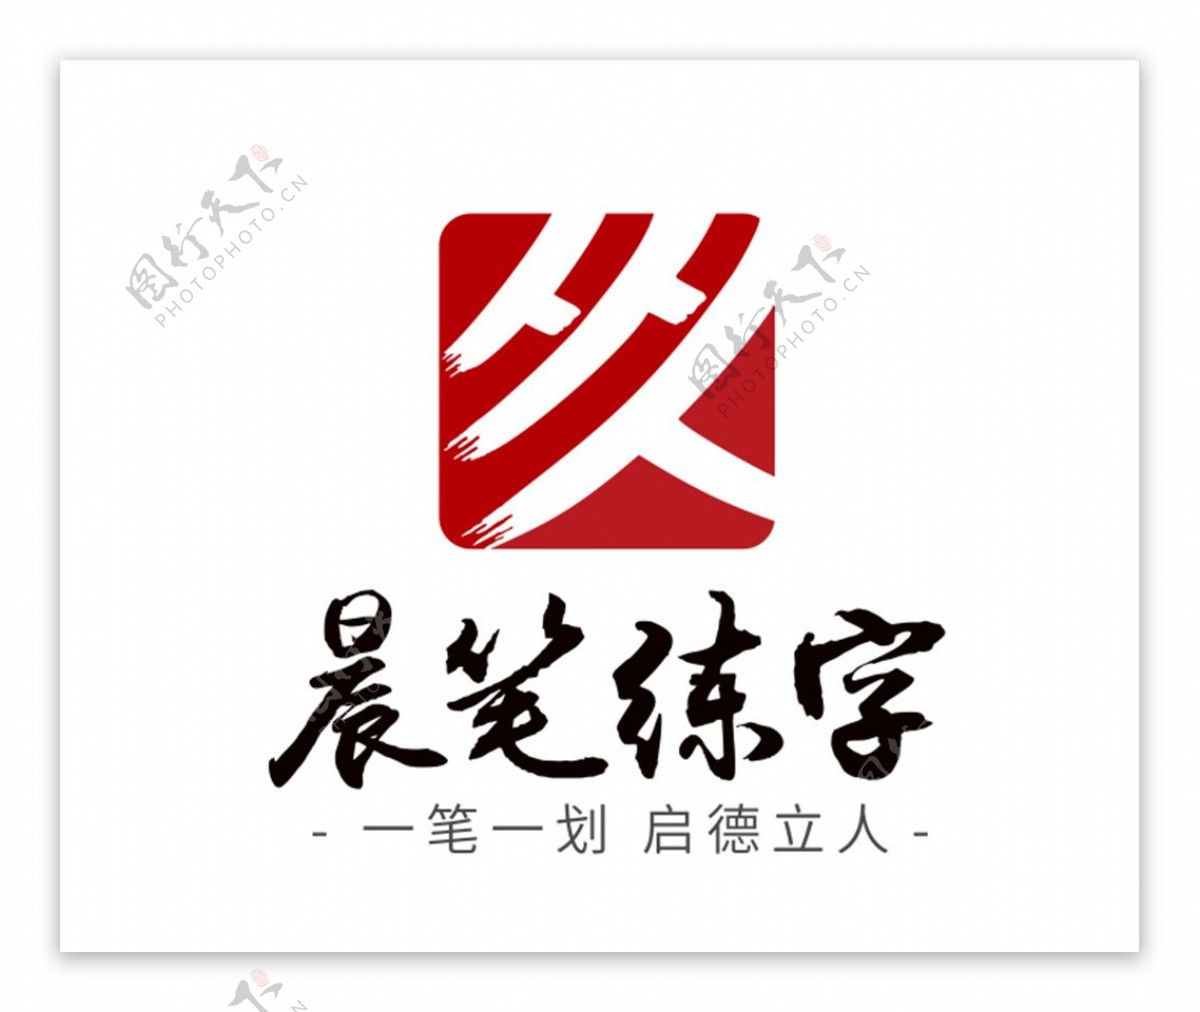 晨笔练字logo图片